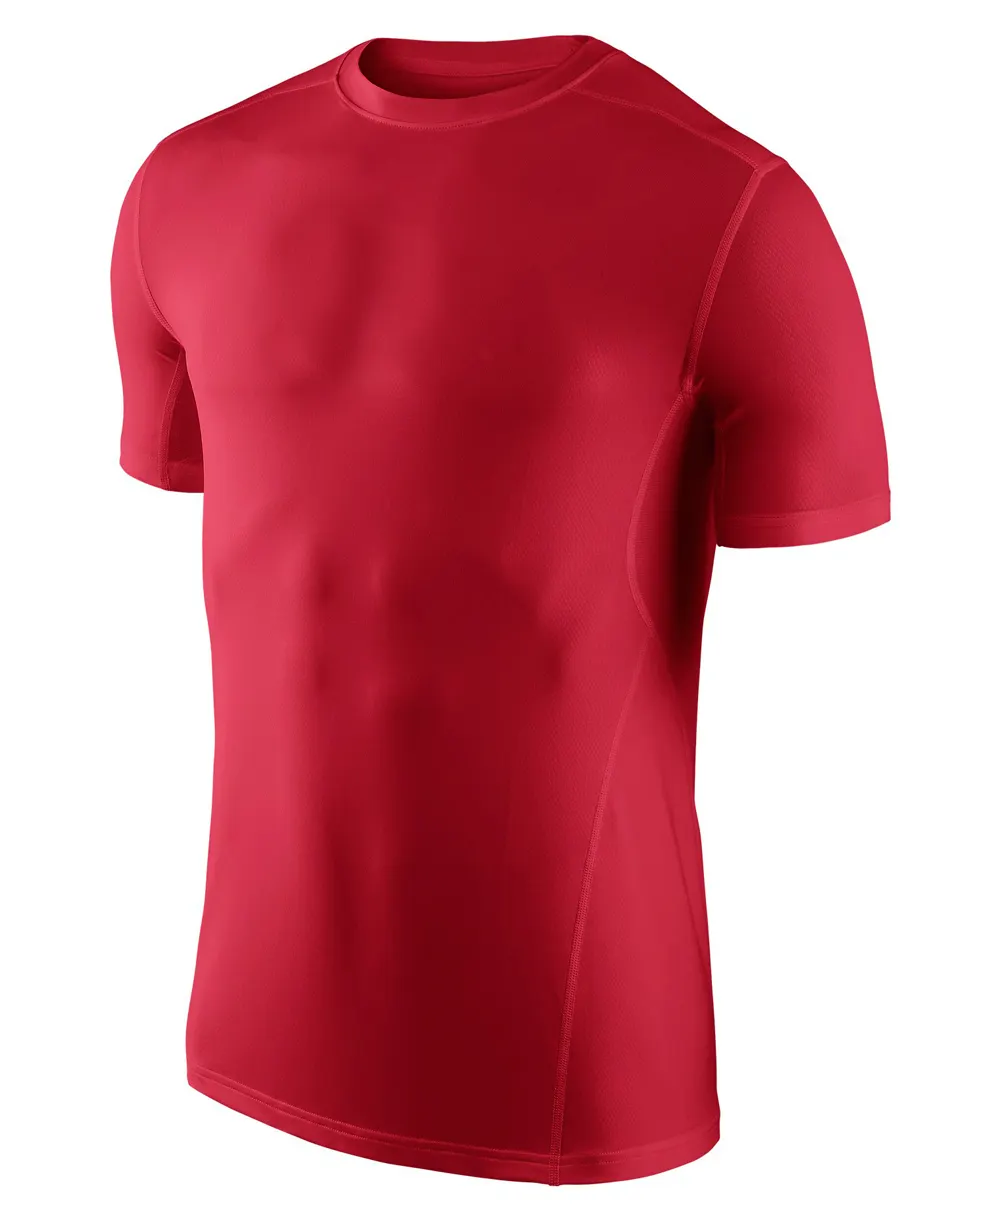 Camiseta de compresión de poliéster para hombre, ropa deportiva de la mejor calidad, sublimación completa, protector rápido personalizado